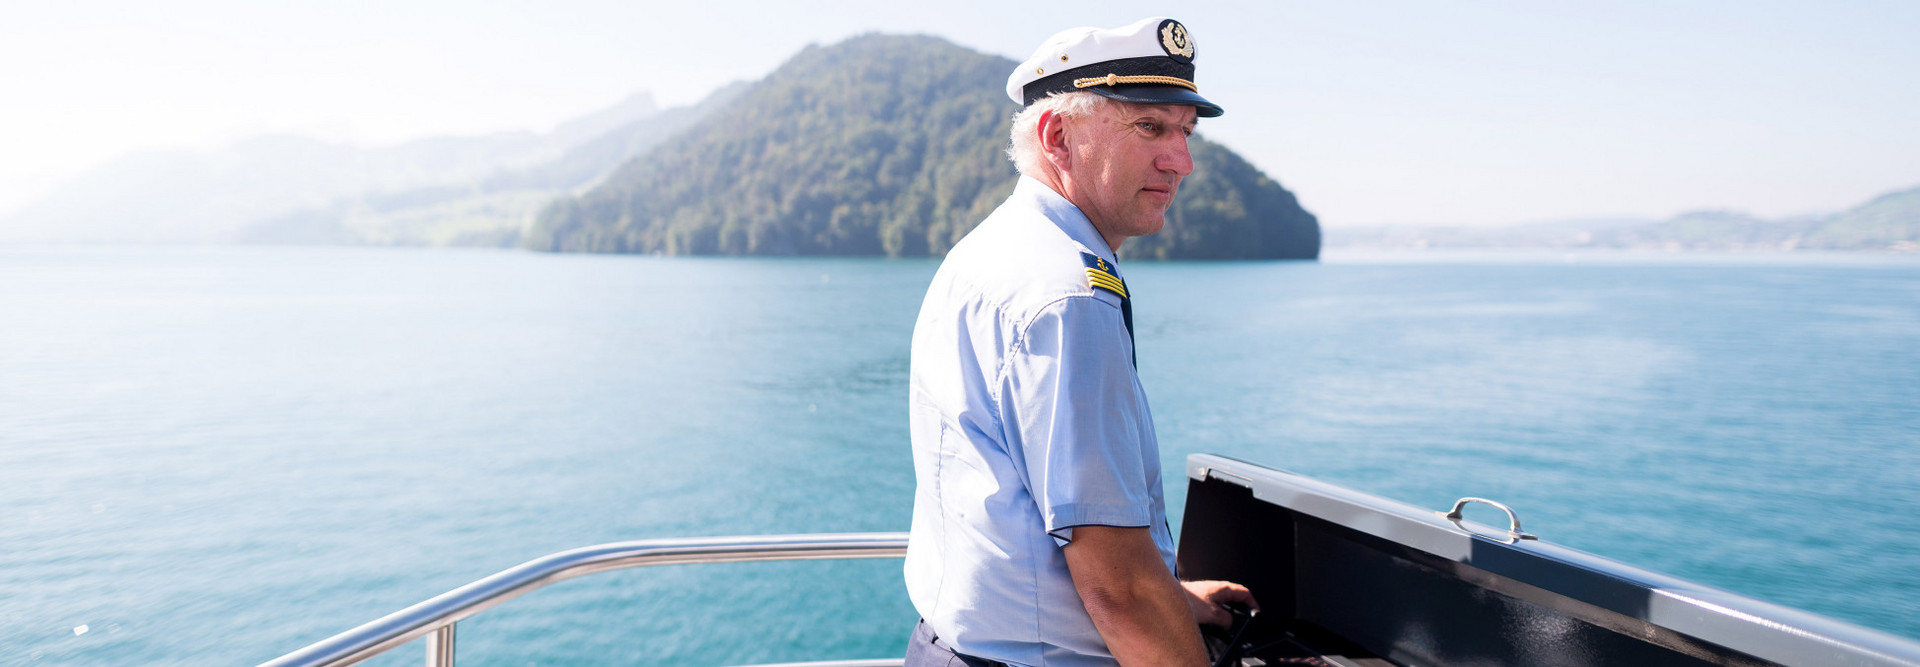 Der Chefkapitän der SGV steuert das Motorschiff über den Vierwaldstättersee.